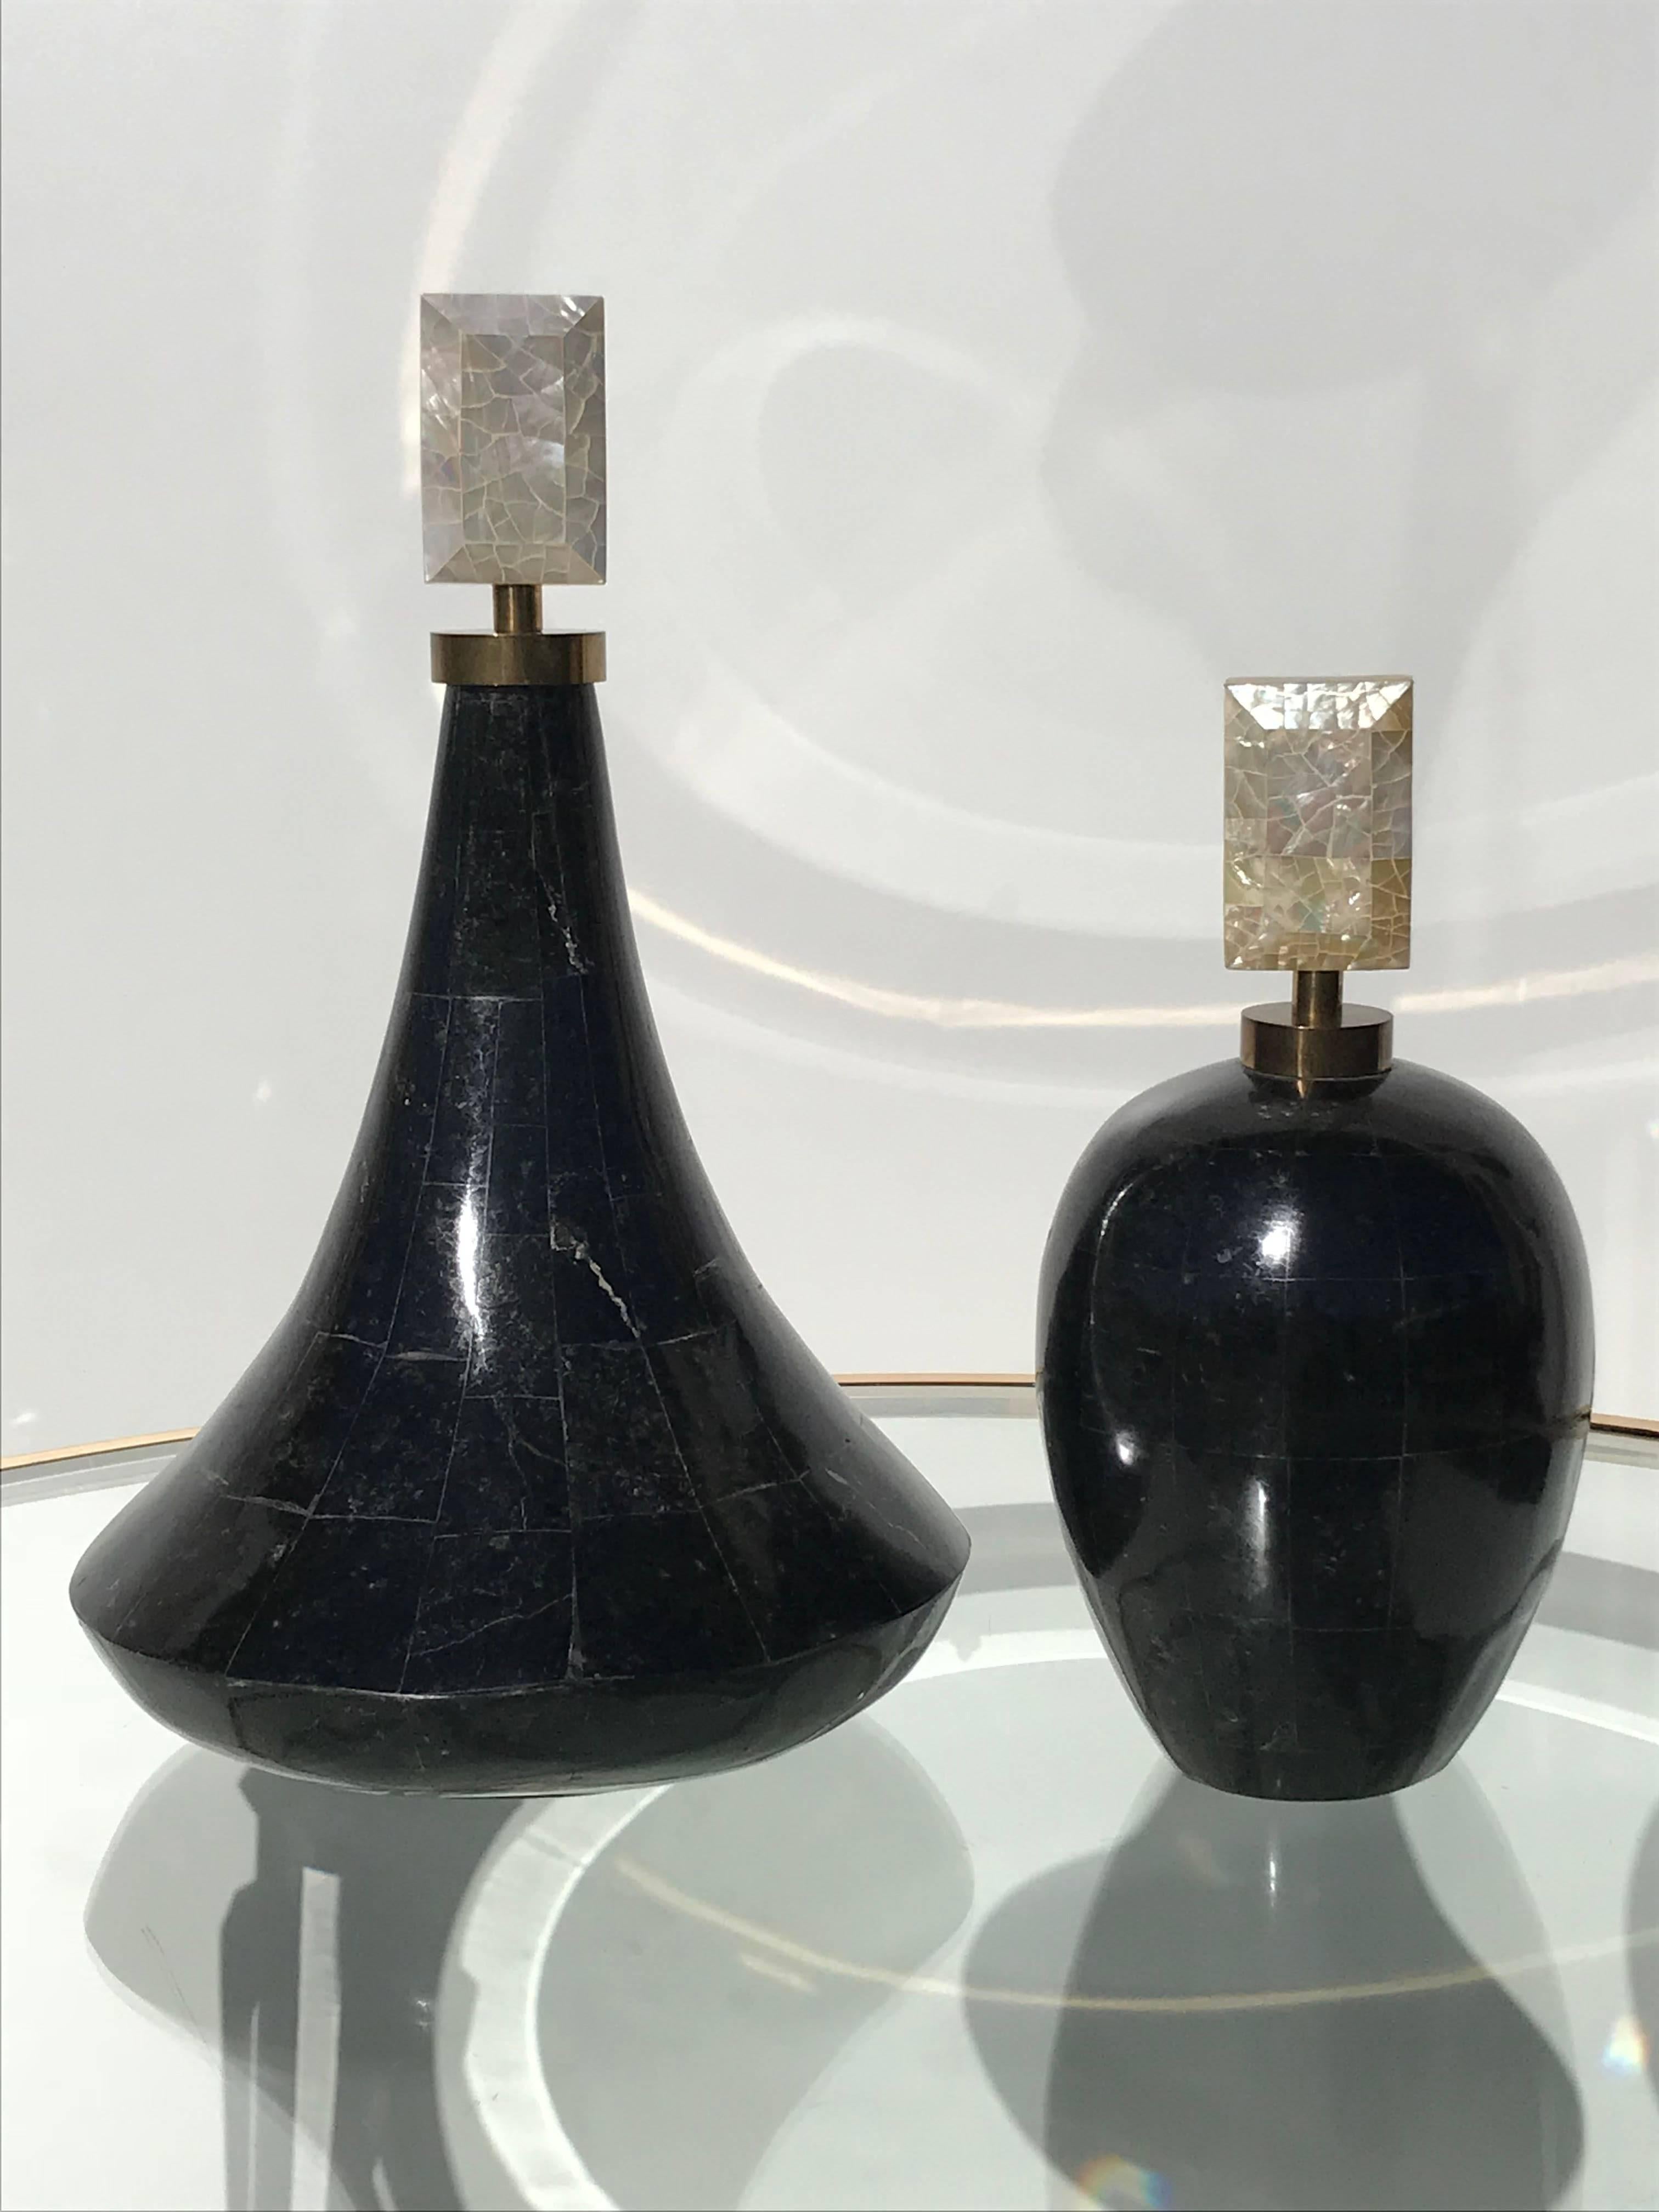 Zwei dekorative Parfümflaschen mit Mosaiksteinchen von Maitland Smith
Maße: Große Flasche Maßnahmen 15 Zoll hoch von 9 Zoll Durchmesser.
Kleine Flasche 11 Zoll hoch und 6 Zoll Durchmesser.